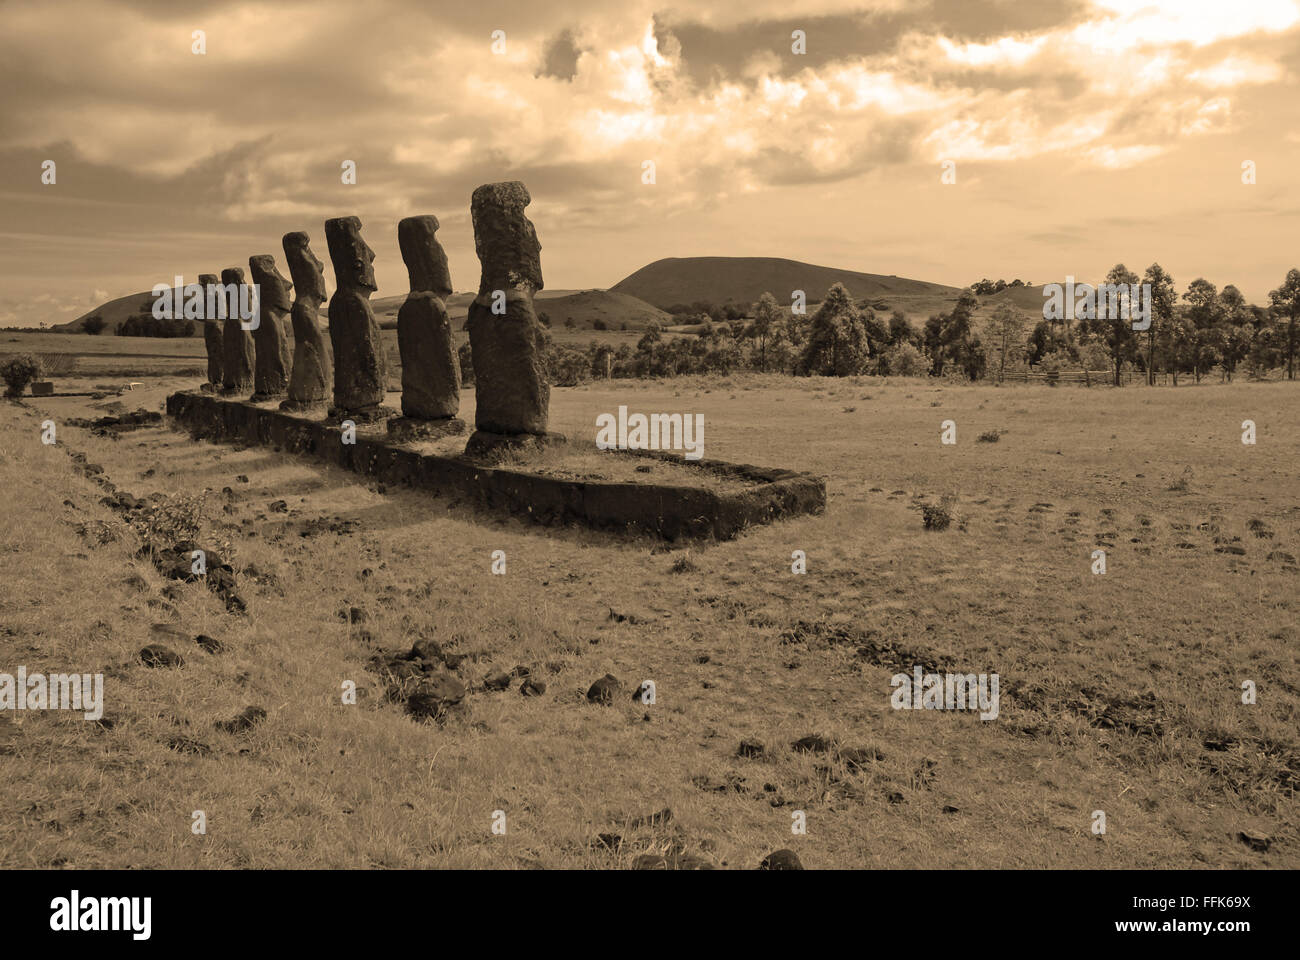 Moai stone statues, Rapa Nui, Easter Island, Chile Stock Photo